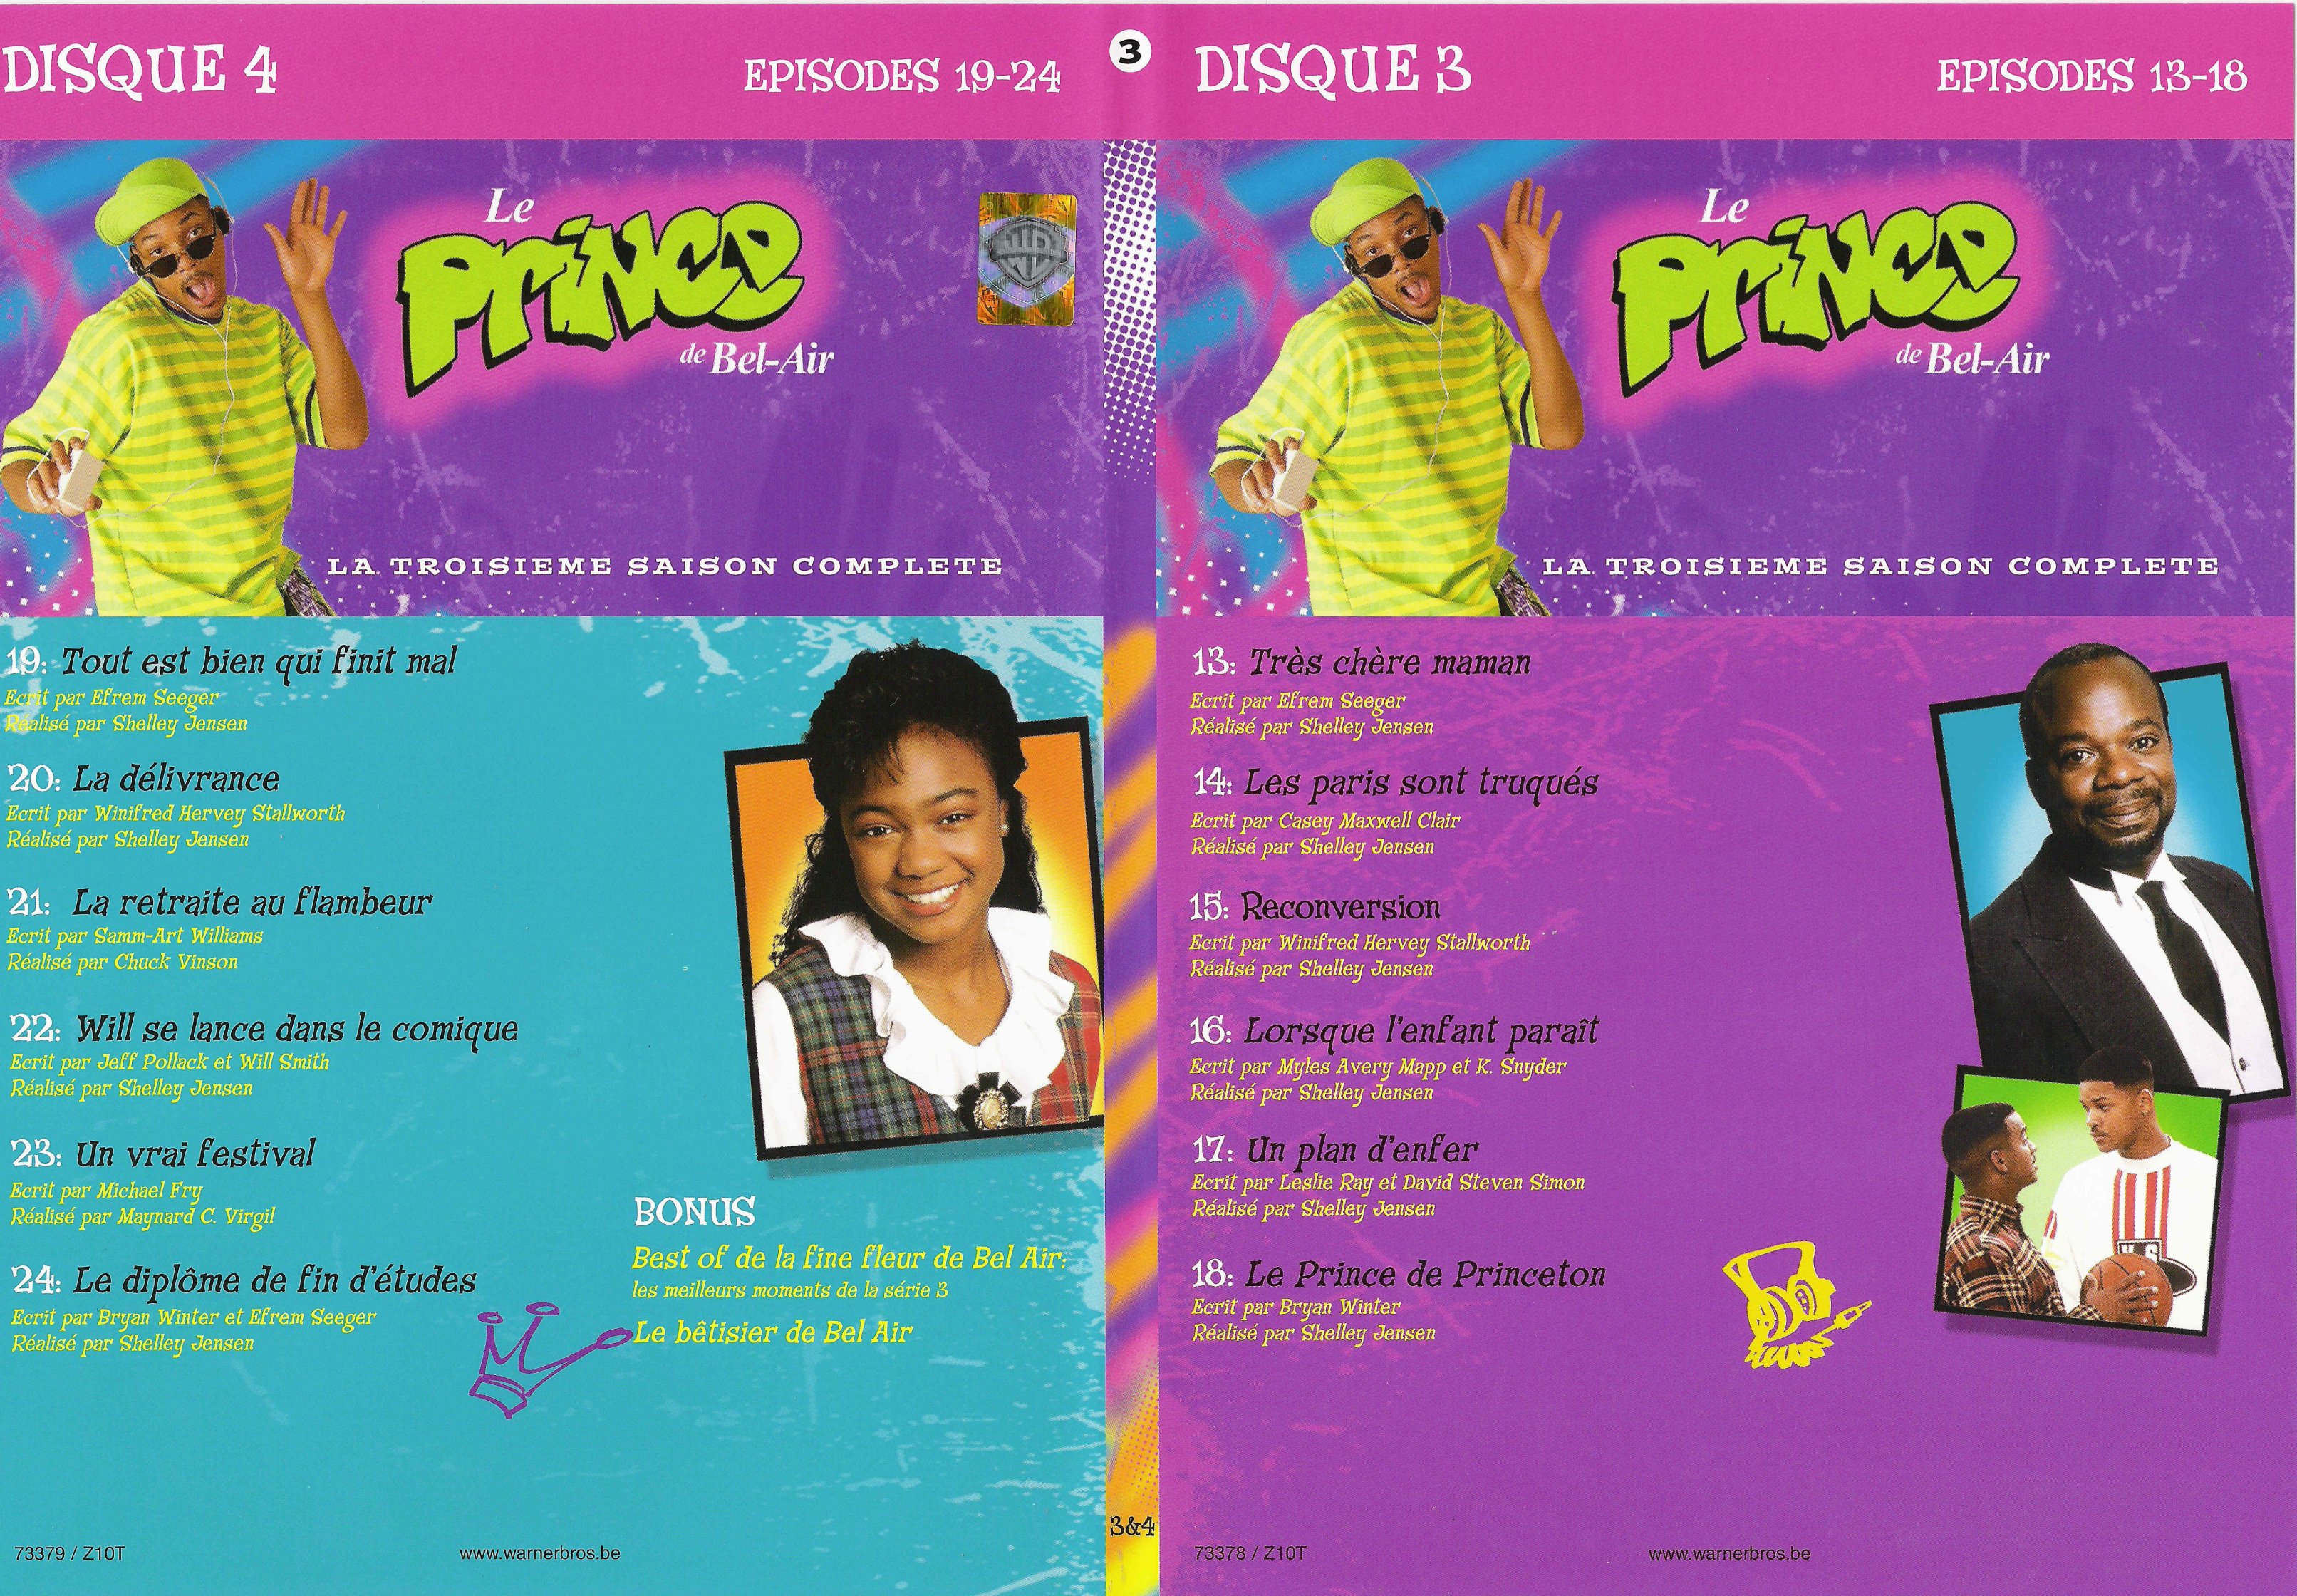 Jaquette DVD Le prince de Bel Air saison 3 vol 2